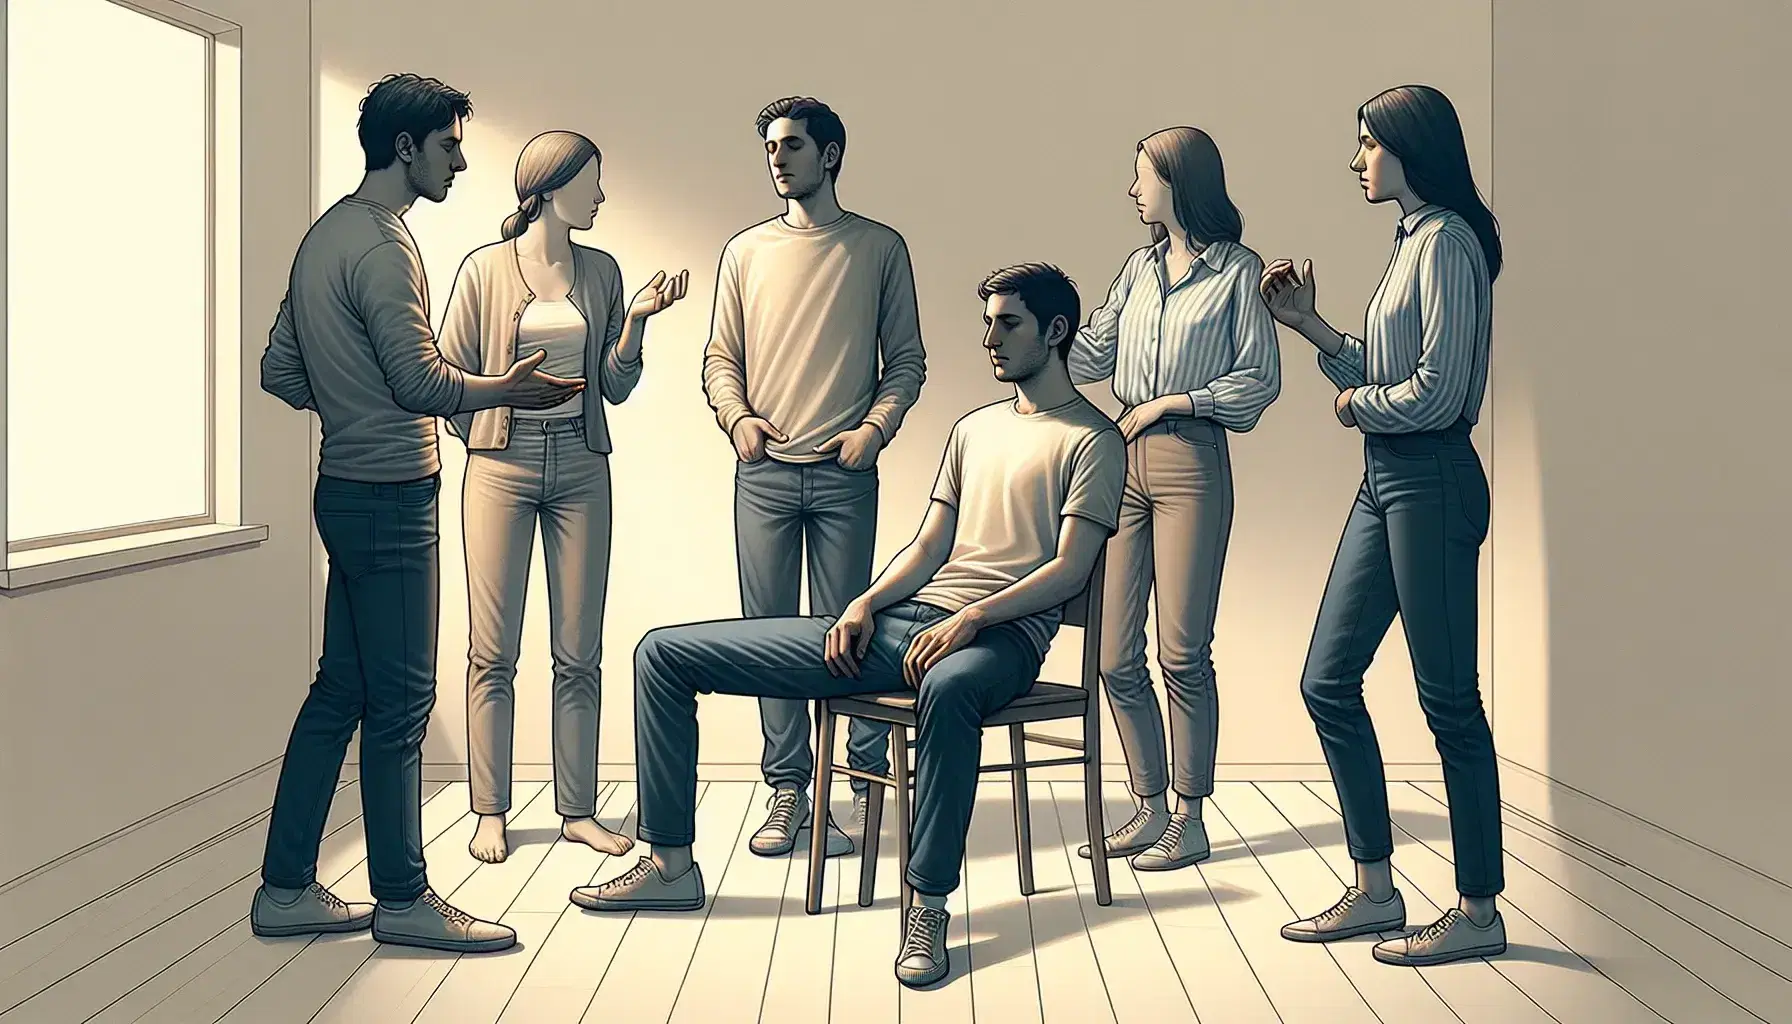 Grupo de cinco personas en interacción en una sala iluminada, con una persona sentada en el centro y cuatro de pie alrededor, gestos que sugieren comunicación y escucha activa.